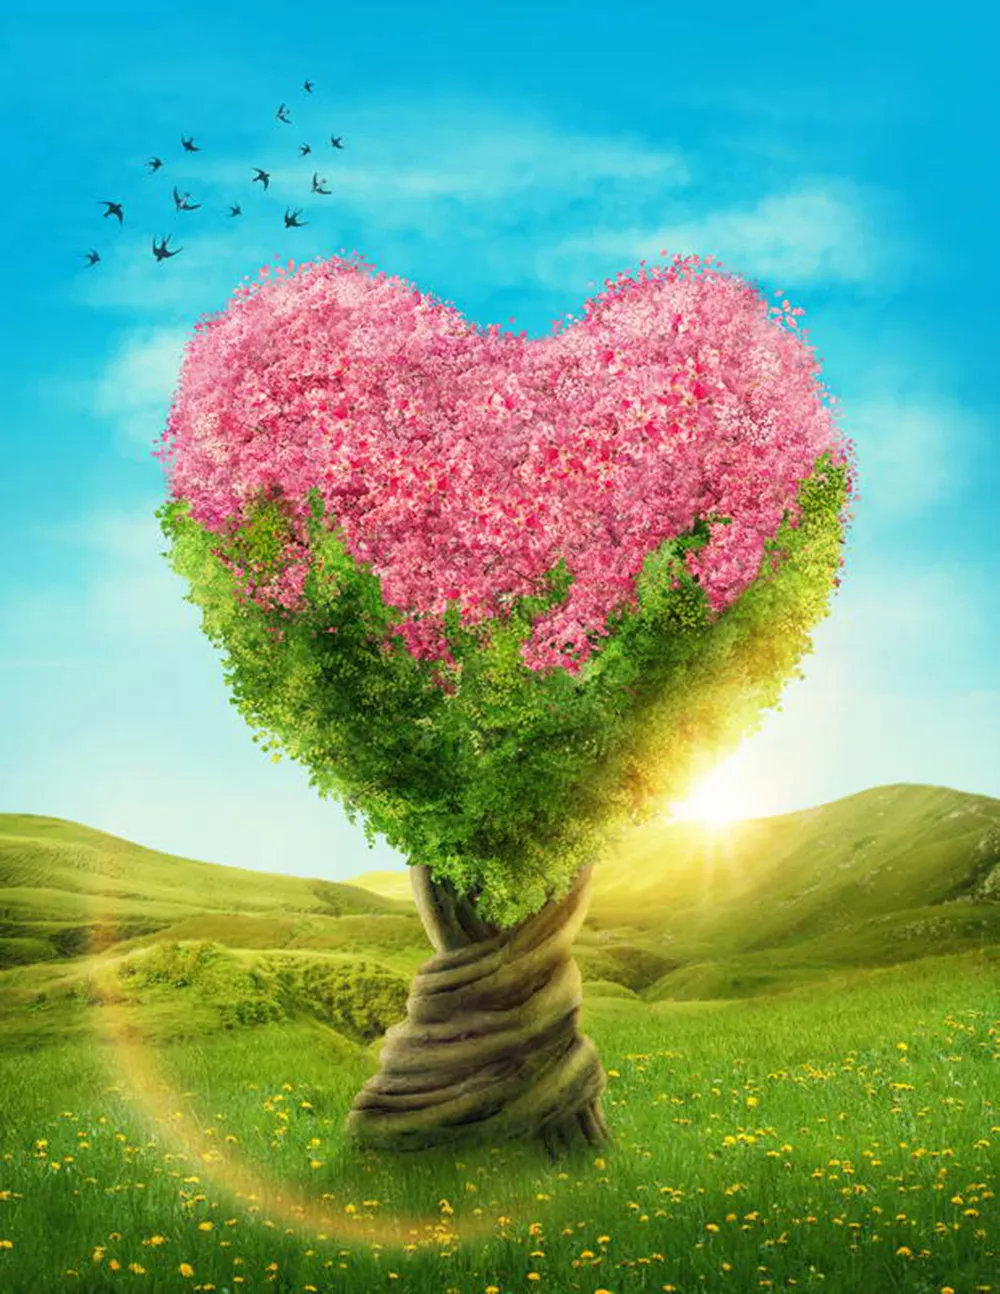 Serce w kształcie drzewa backdrops z różowe kwiaty słońce błękitne niebo zielone trawy piękna wiosna sceneria na zewnątrz romantyczny ślub tło